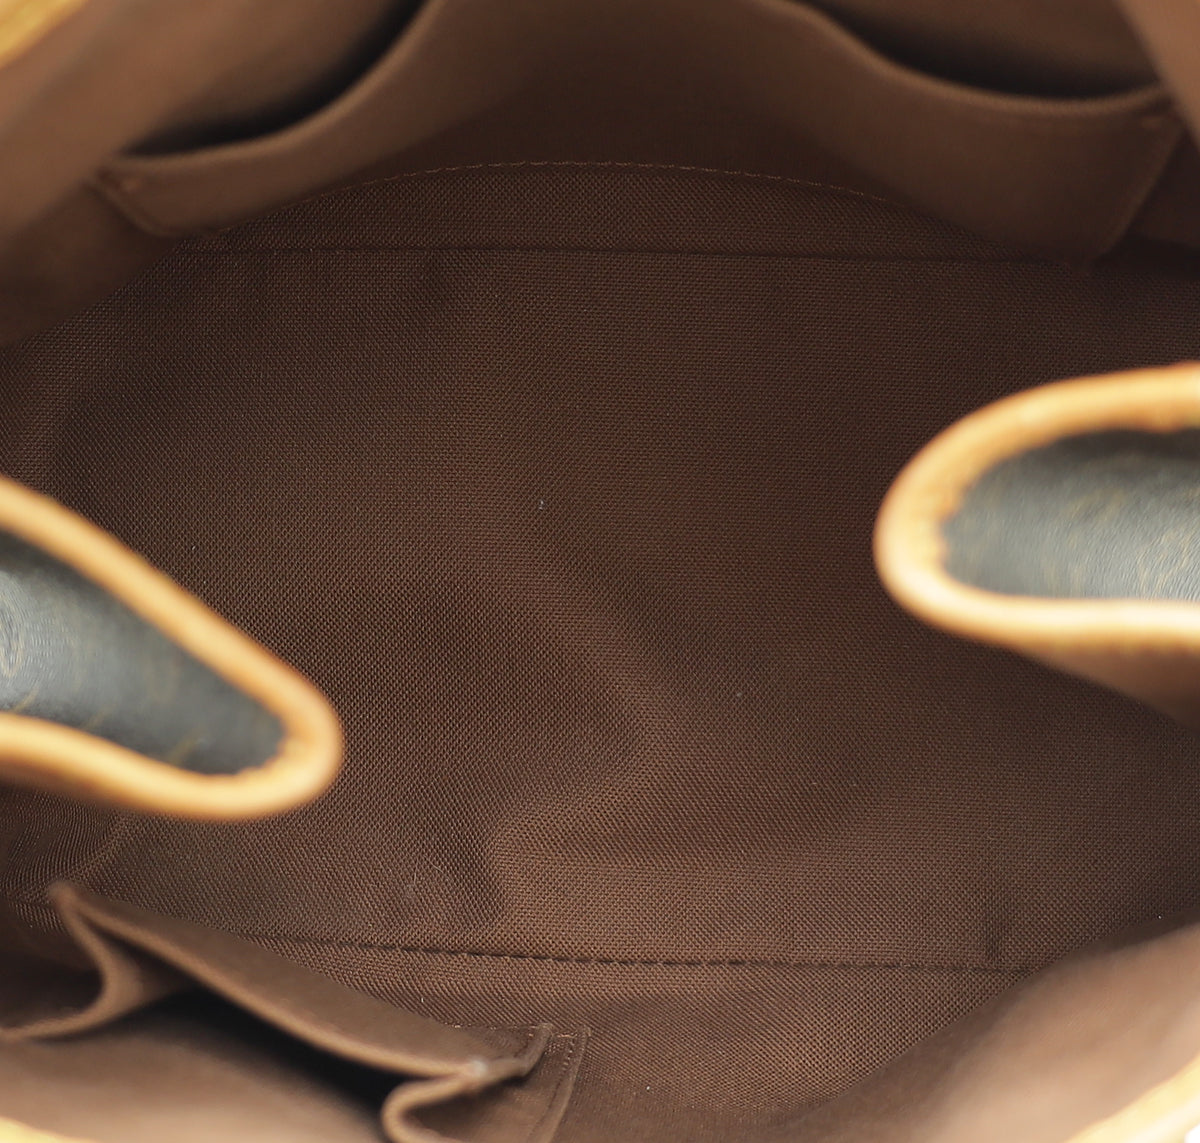 louis vuitton batignolles vertical PM size - Handbags - Bags - Wallets -  102338652